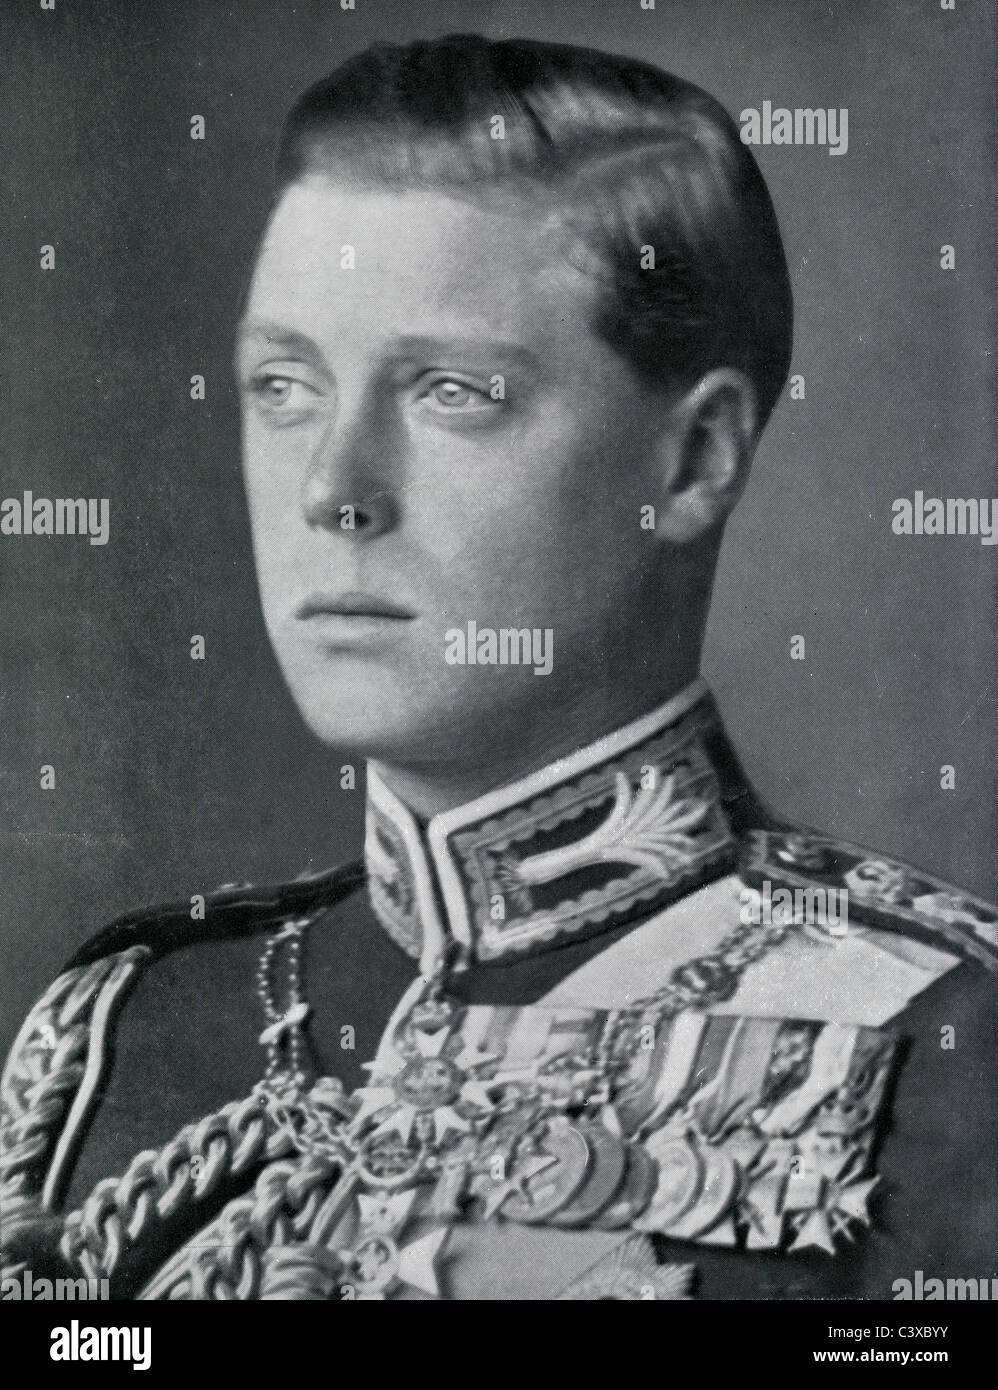 S.a.r. le Prince de Galles, photo de Swaine programme souvenir de la King George's Jubilee, publié par HMSO. Londres, Royaume-Uni, 1935 Banque D'Images